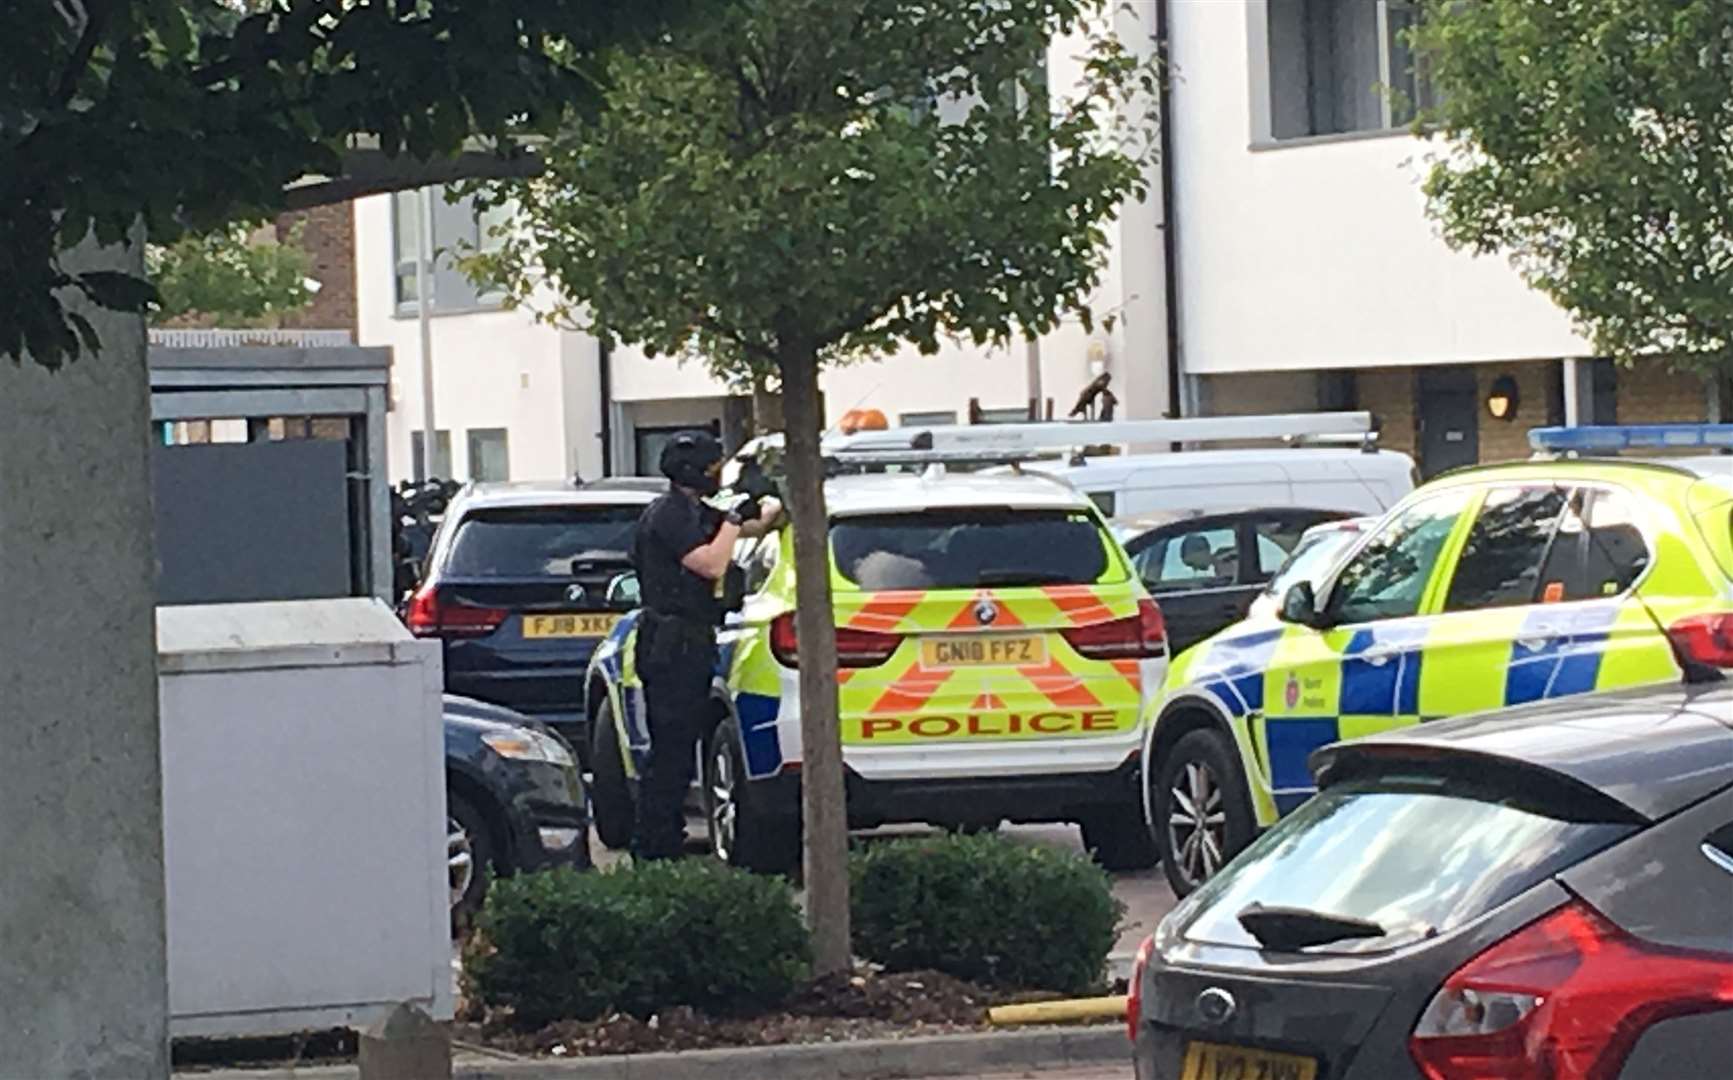 An officer has been seen pointing a gun at a block of flats